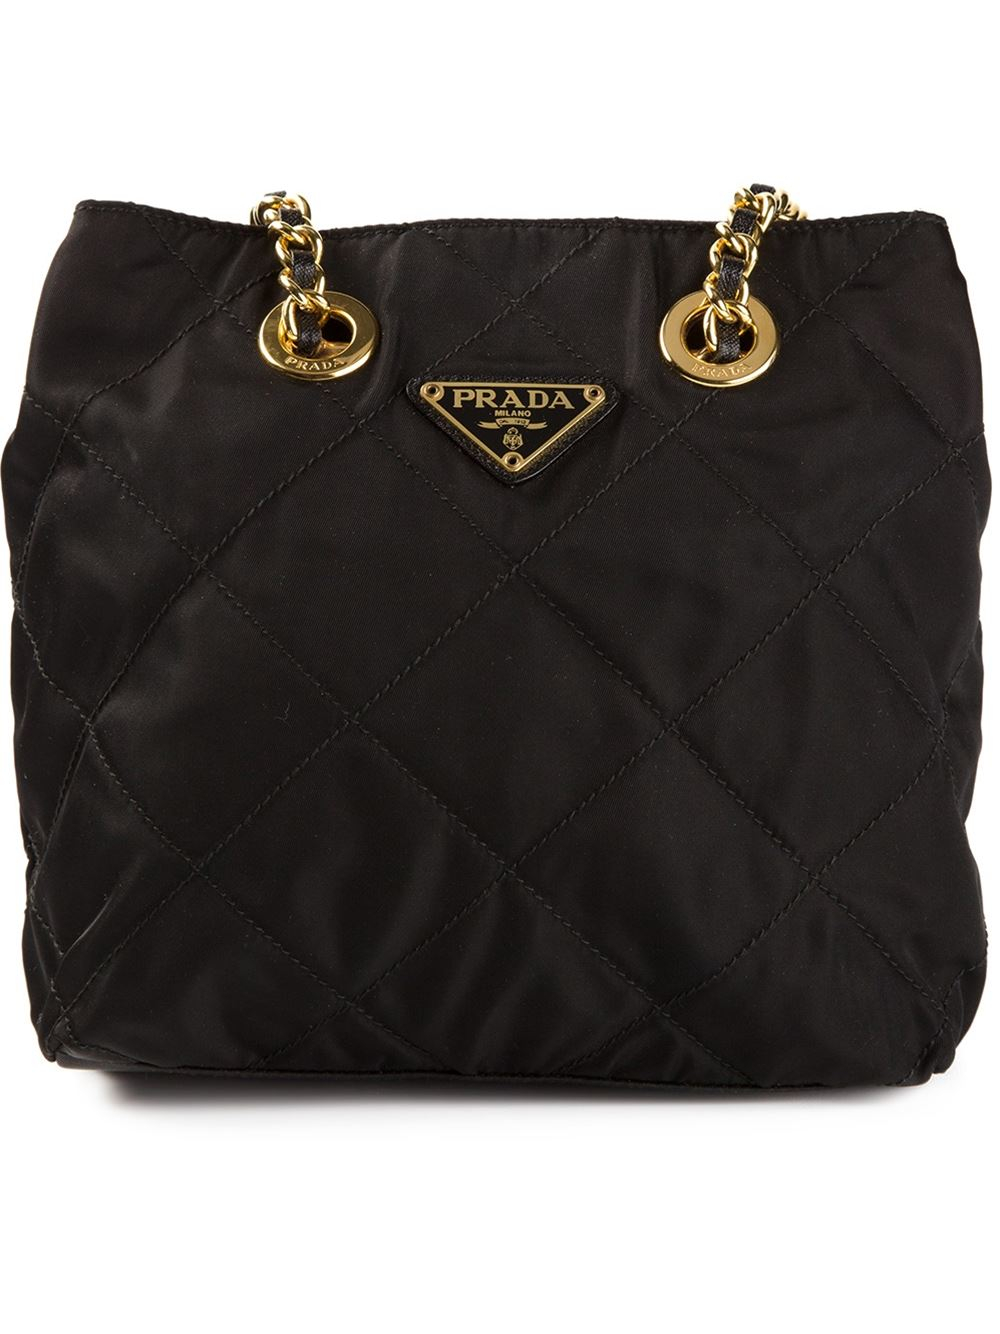 Prada Quilted Shoulder Bag in Black | Lyst  